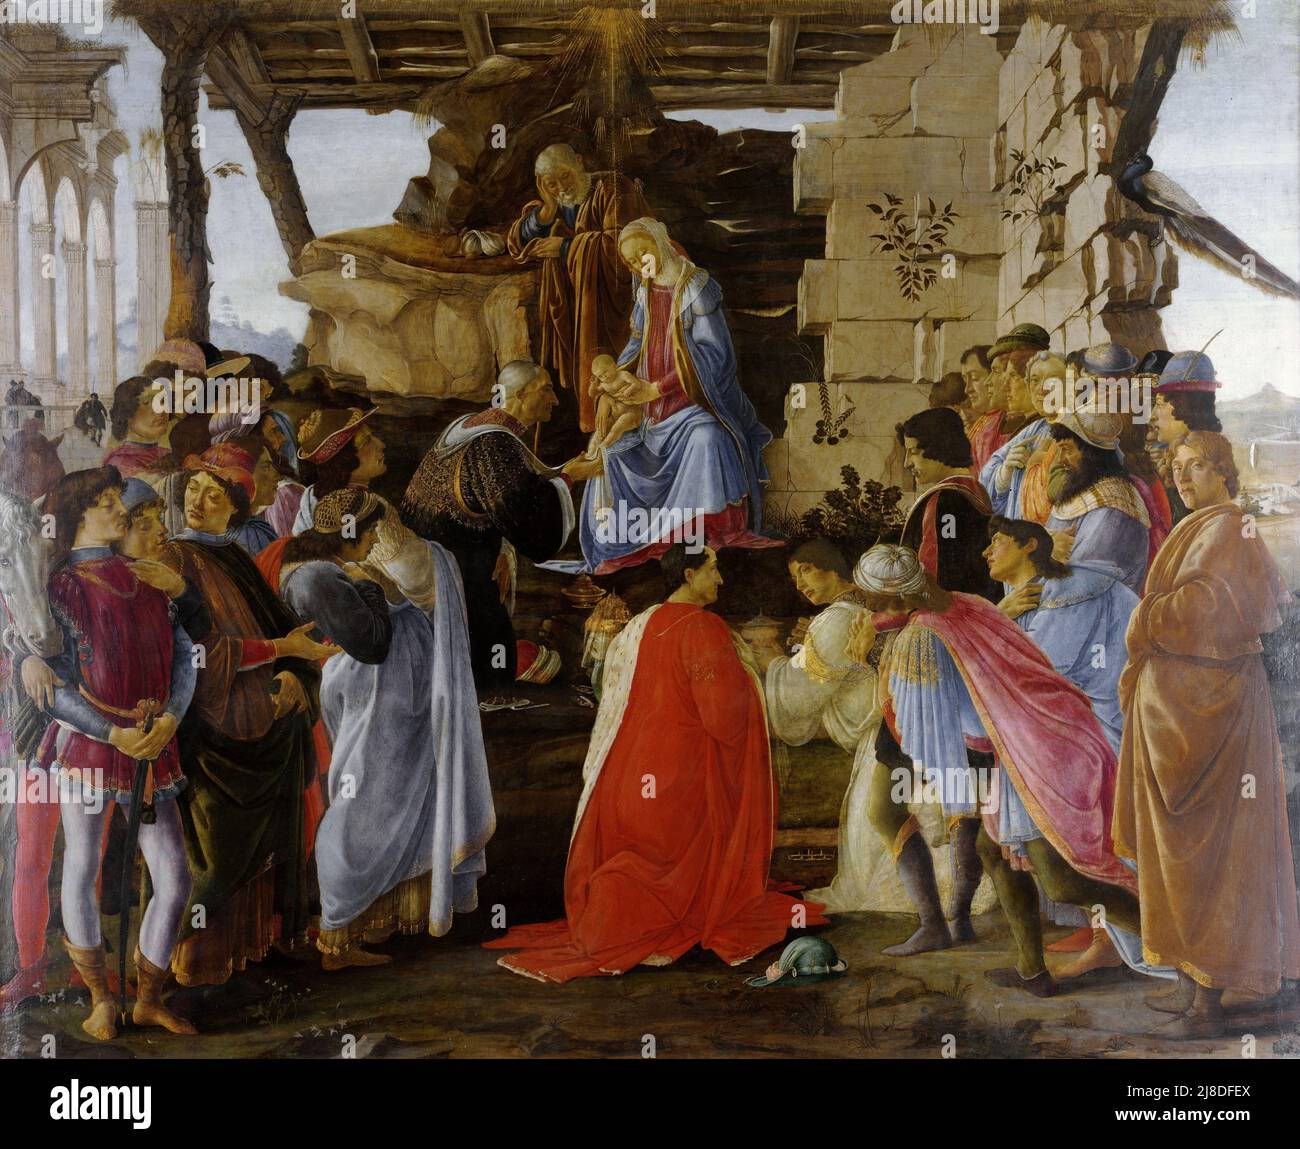 L'adoration des Magi par Sandro Botticelli. Dans ce mythe chrétien, trois sages hommes ou rois viennent visiter le nouveau-né jésus et le reconnaissent comme le messie et fils de dieu. Banque D'Images